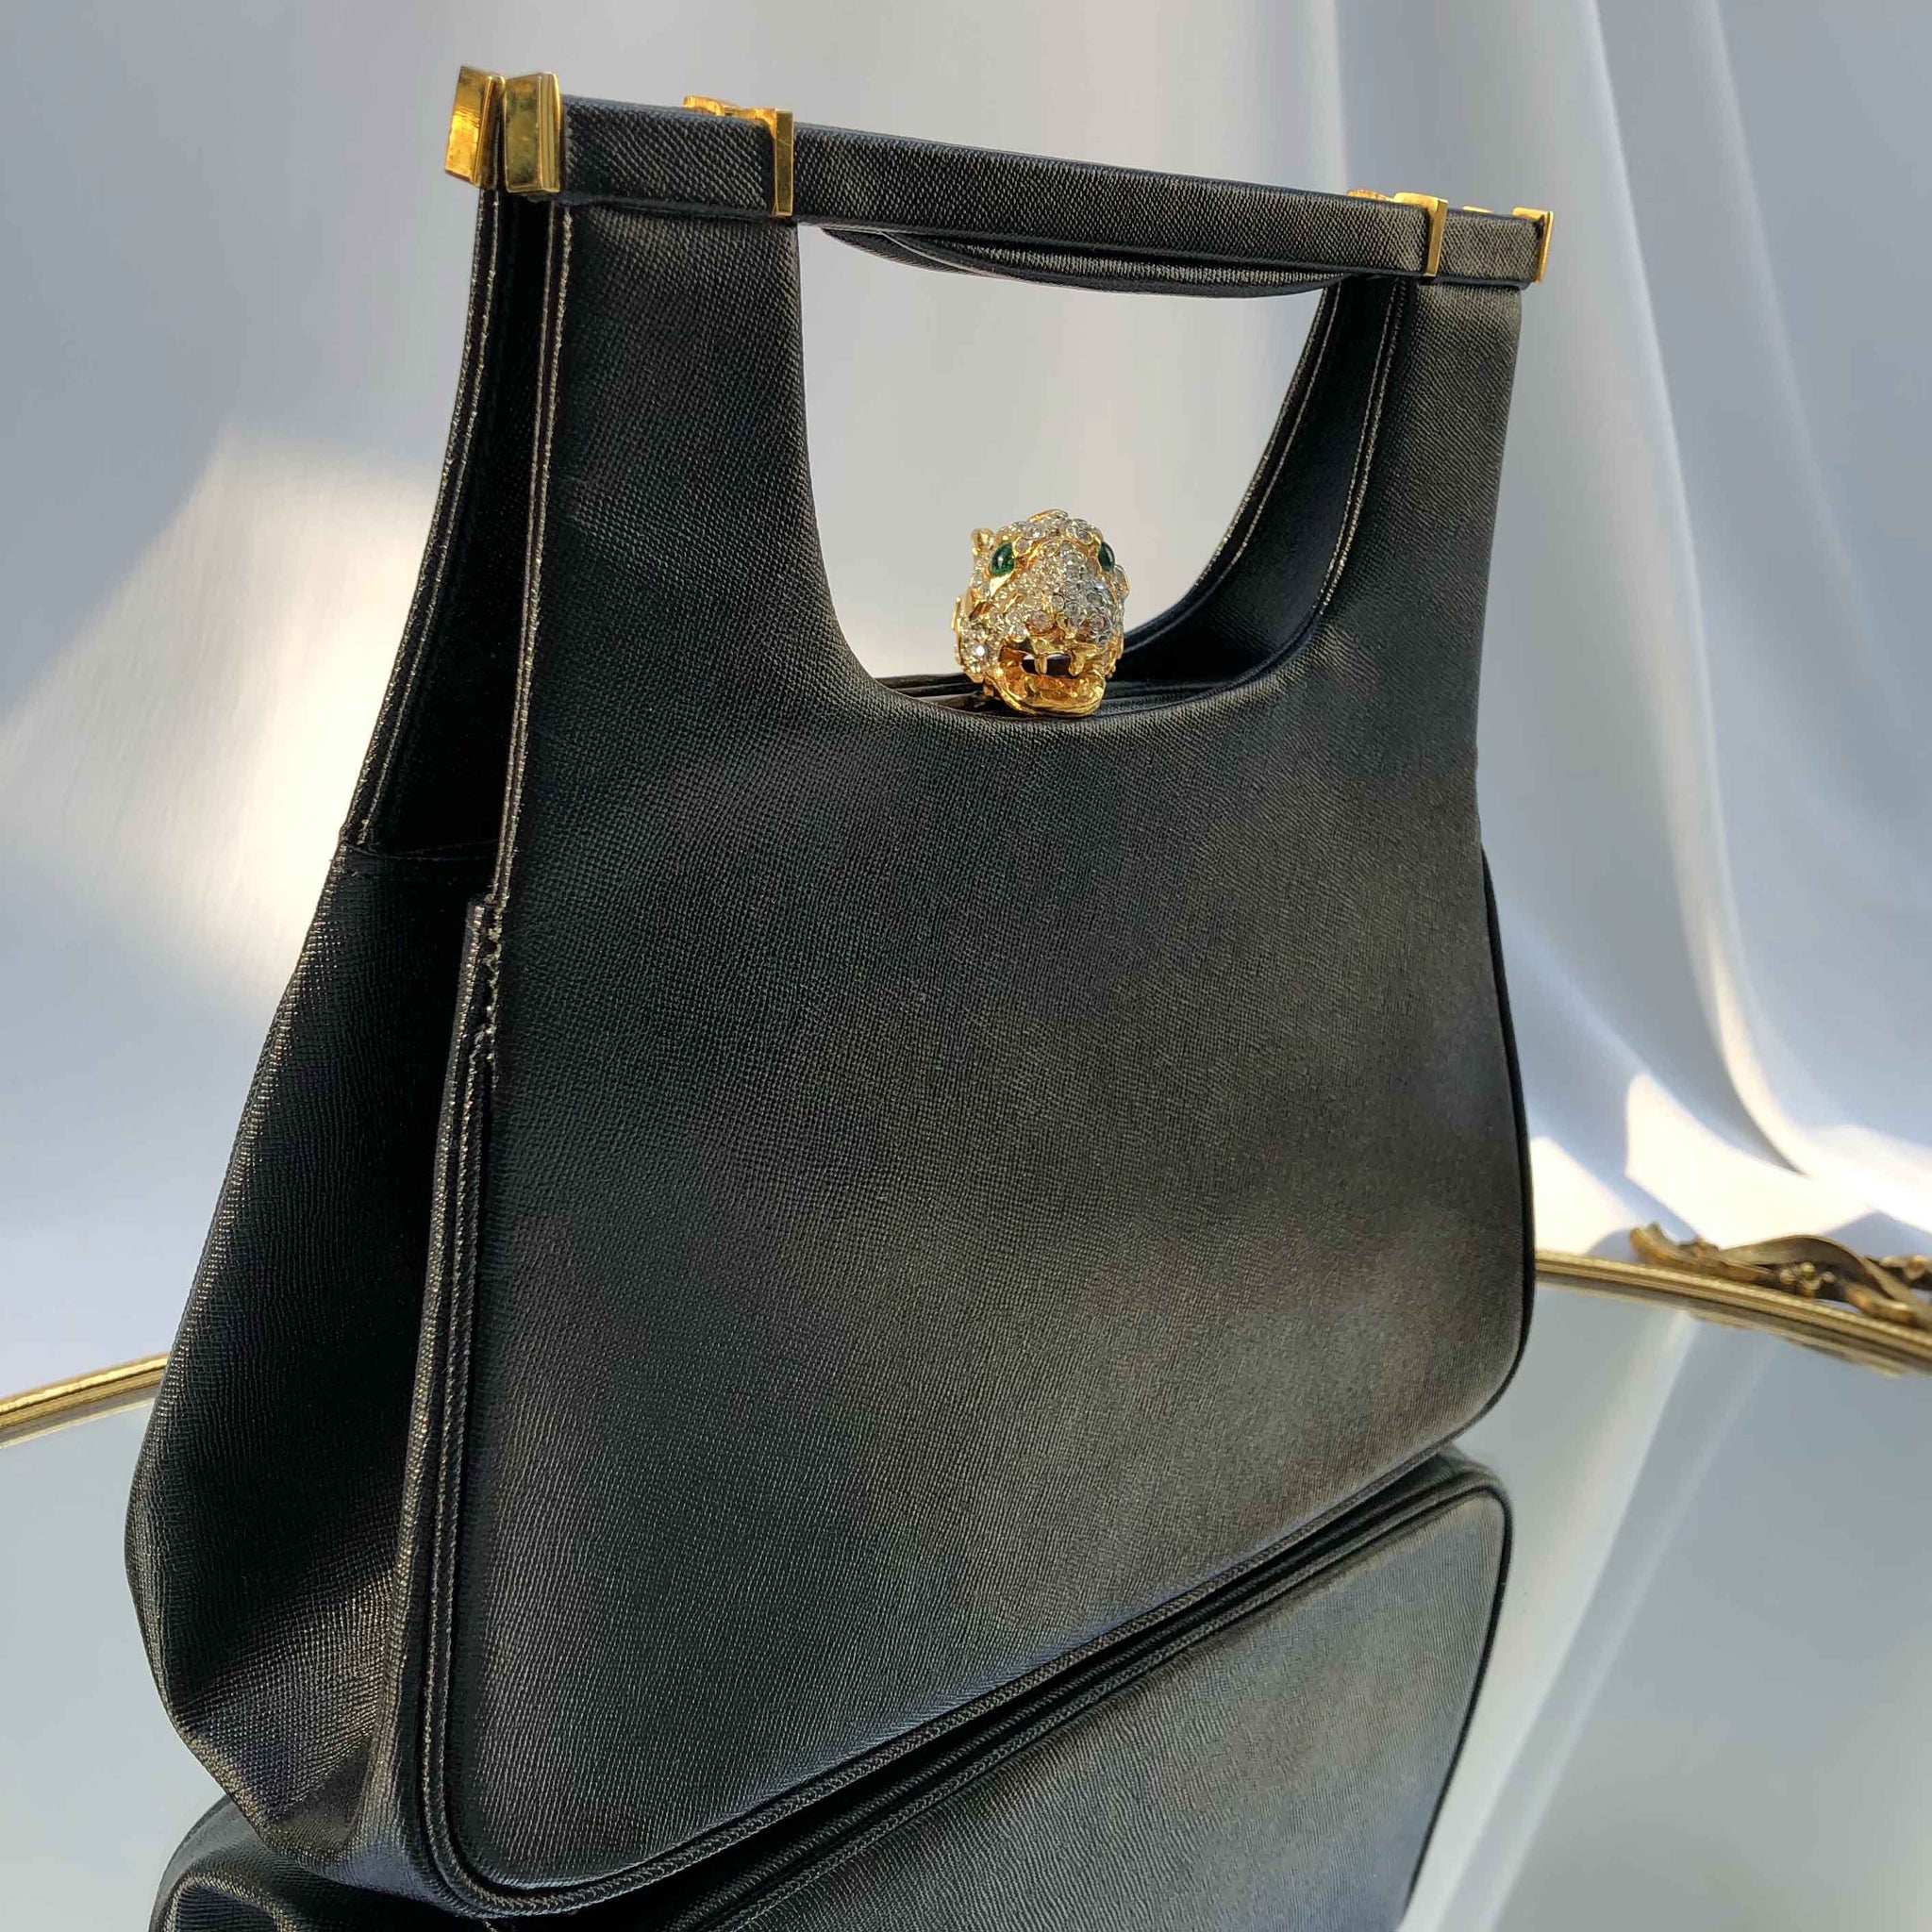 Jaguar Genuine Leather Ladies Handbag - Tana Elegant